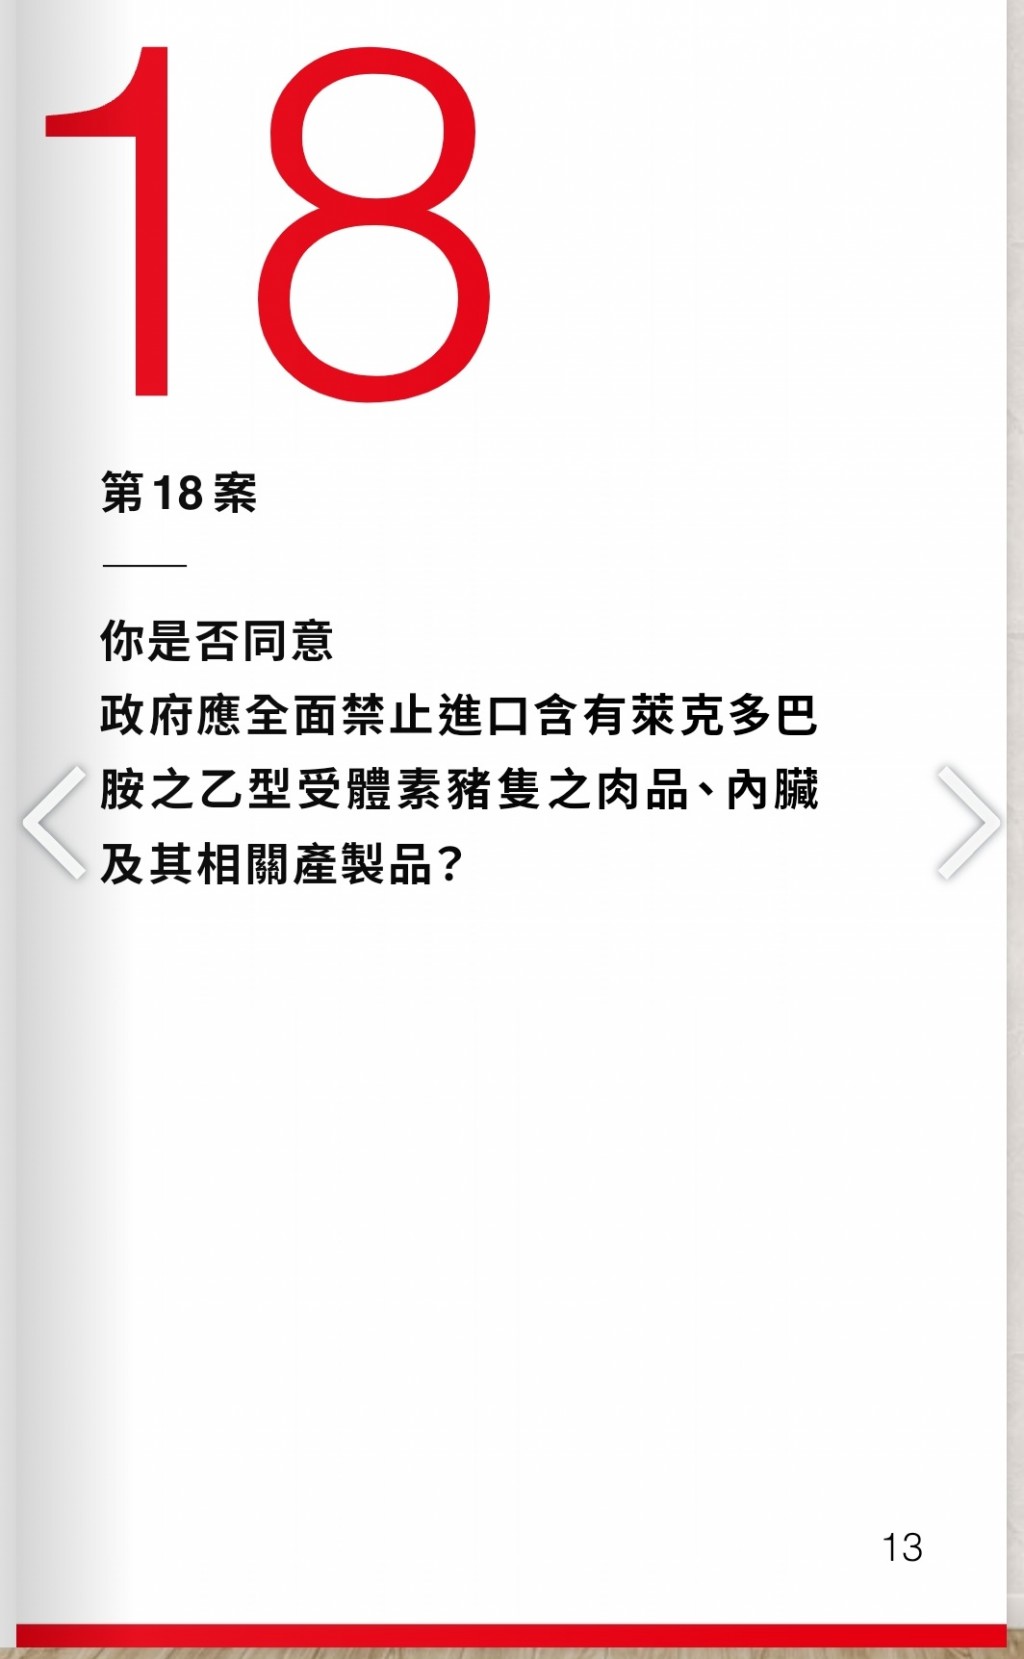 【台灣1218公投•為自己而投】第18案是「反萊豬」不是「反美豬」蔡總統不該帶頭欺騙人民！